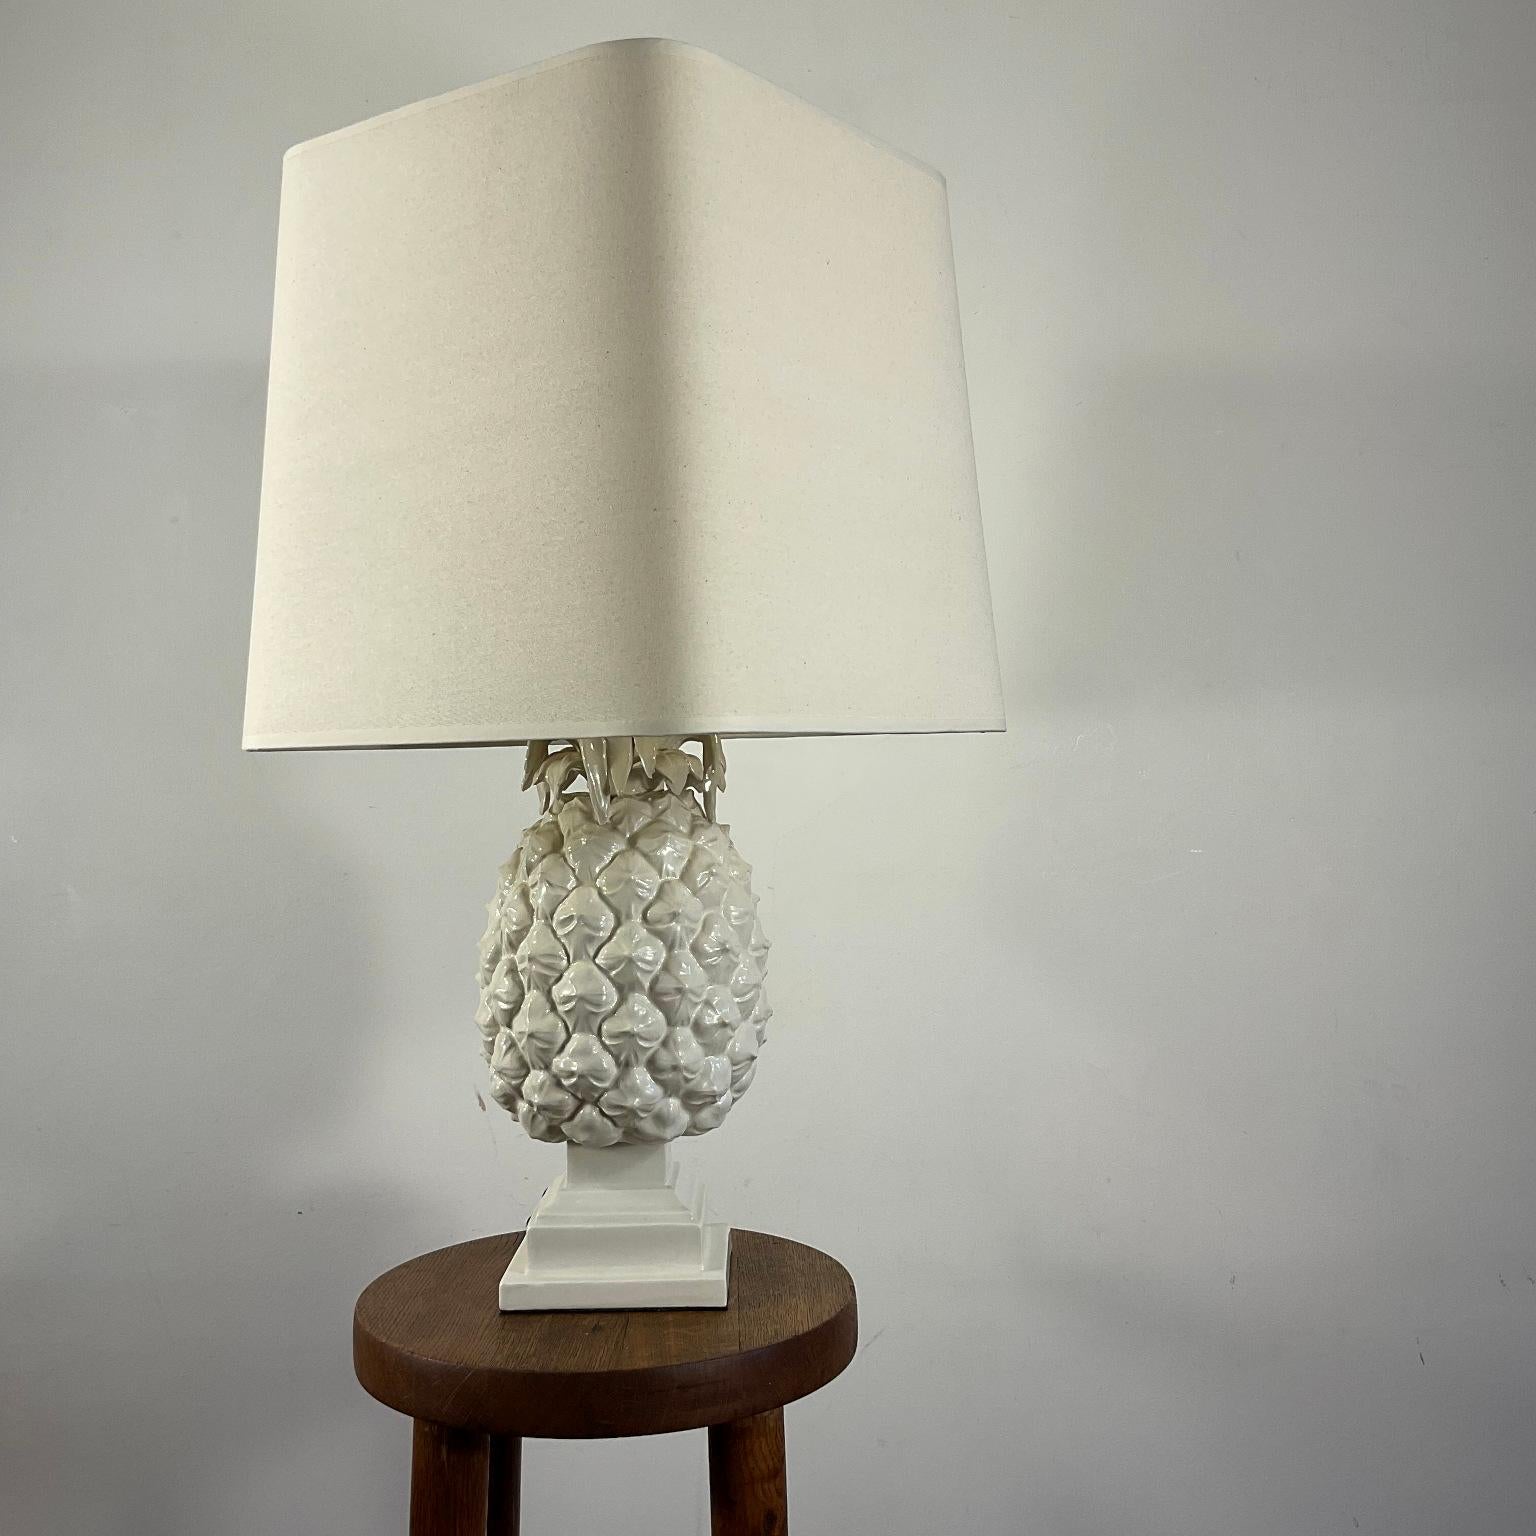 Lampe de table ananas en céramique émaillée blanche des années 1970 avec trois lumières qui peuvent être allumées individuellement par deux interrupteurs. Comprend un abat-jour qui a été remis à neuf.